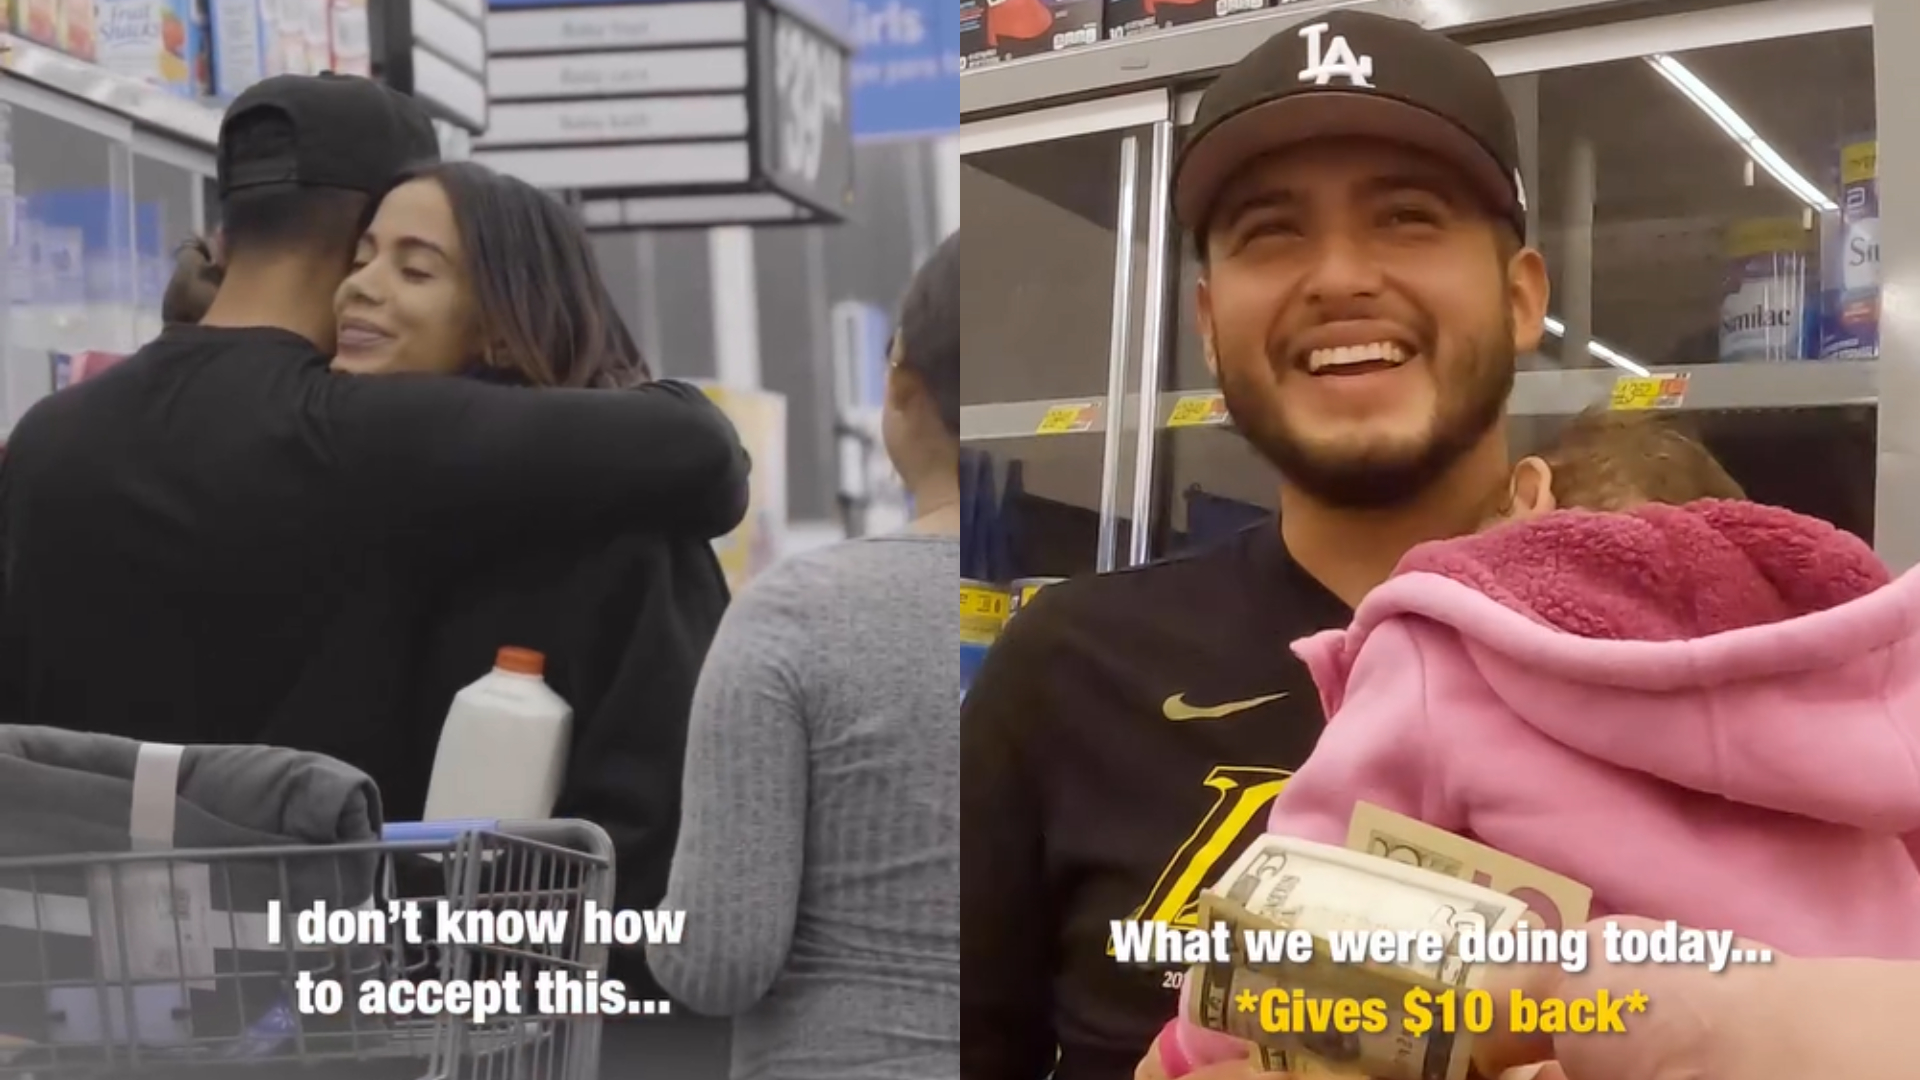 Anitta e influencer Zachery Dereniowski surpreendem família em supermercado nos EUA com atitude emocionante; assista